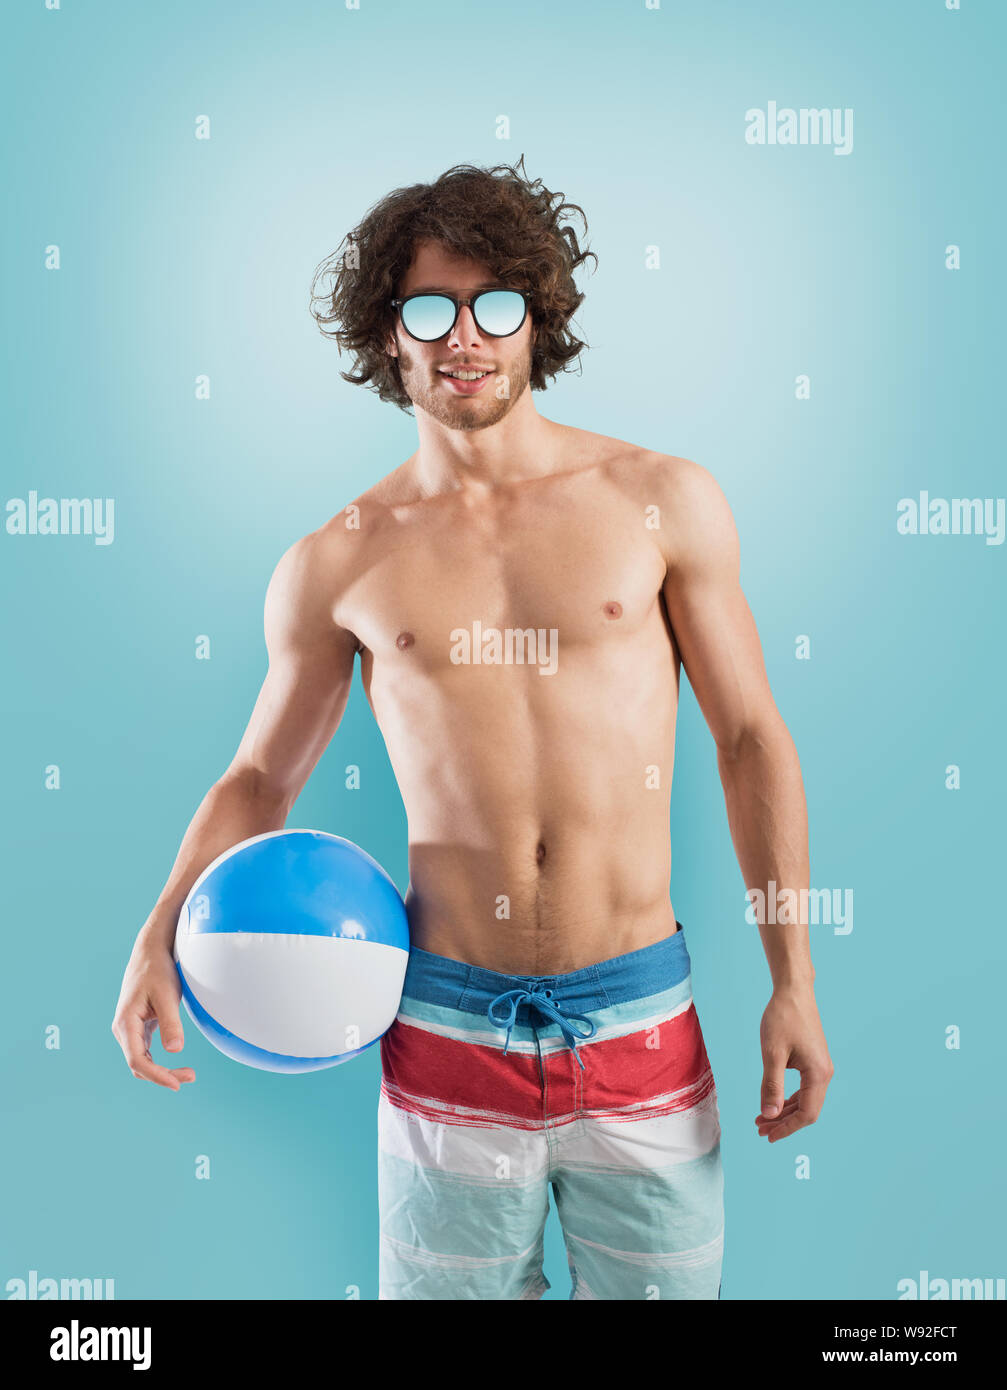 Junge mit Badeanzug auf hellblauem Hintergrund Stockfoto